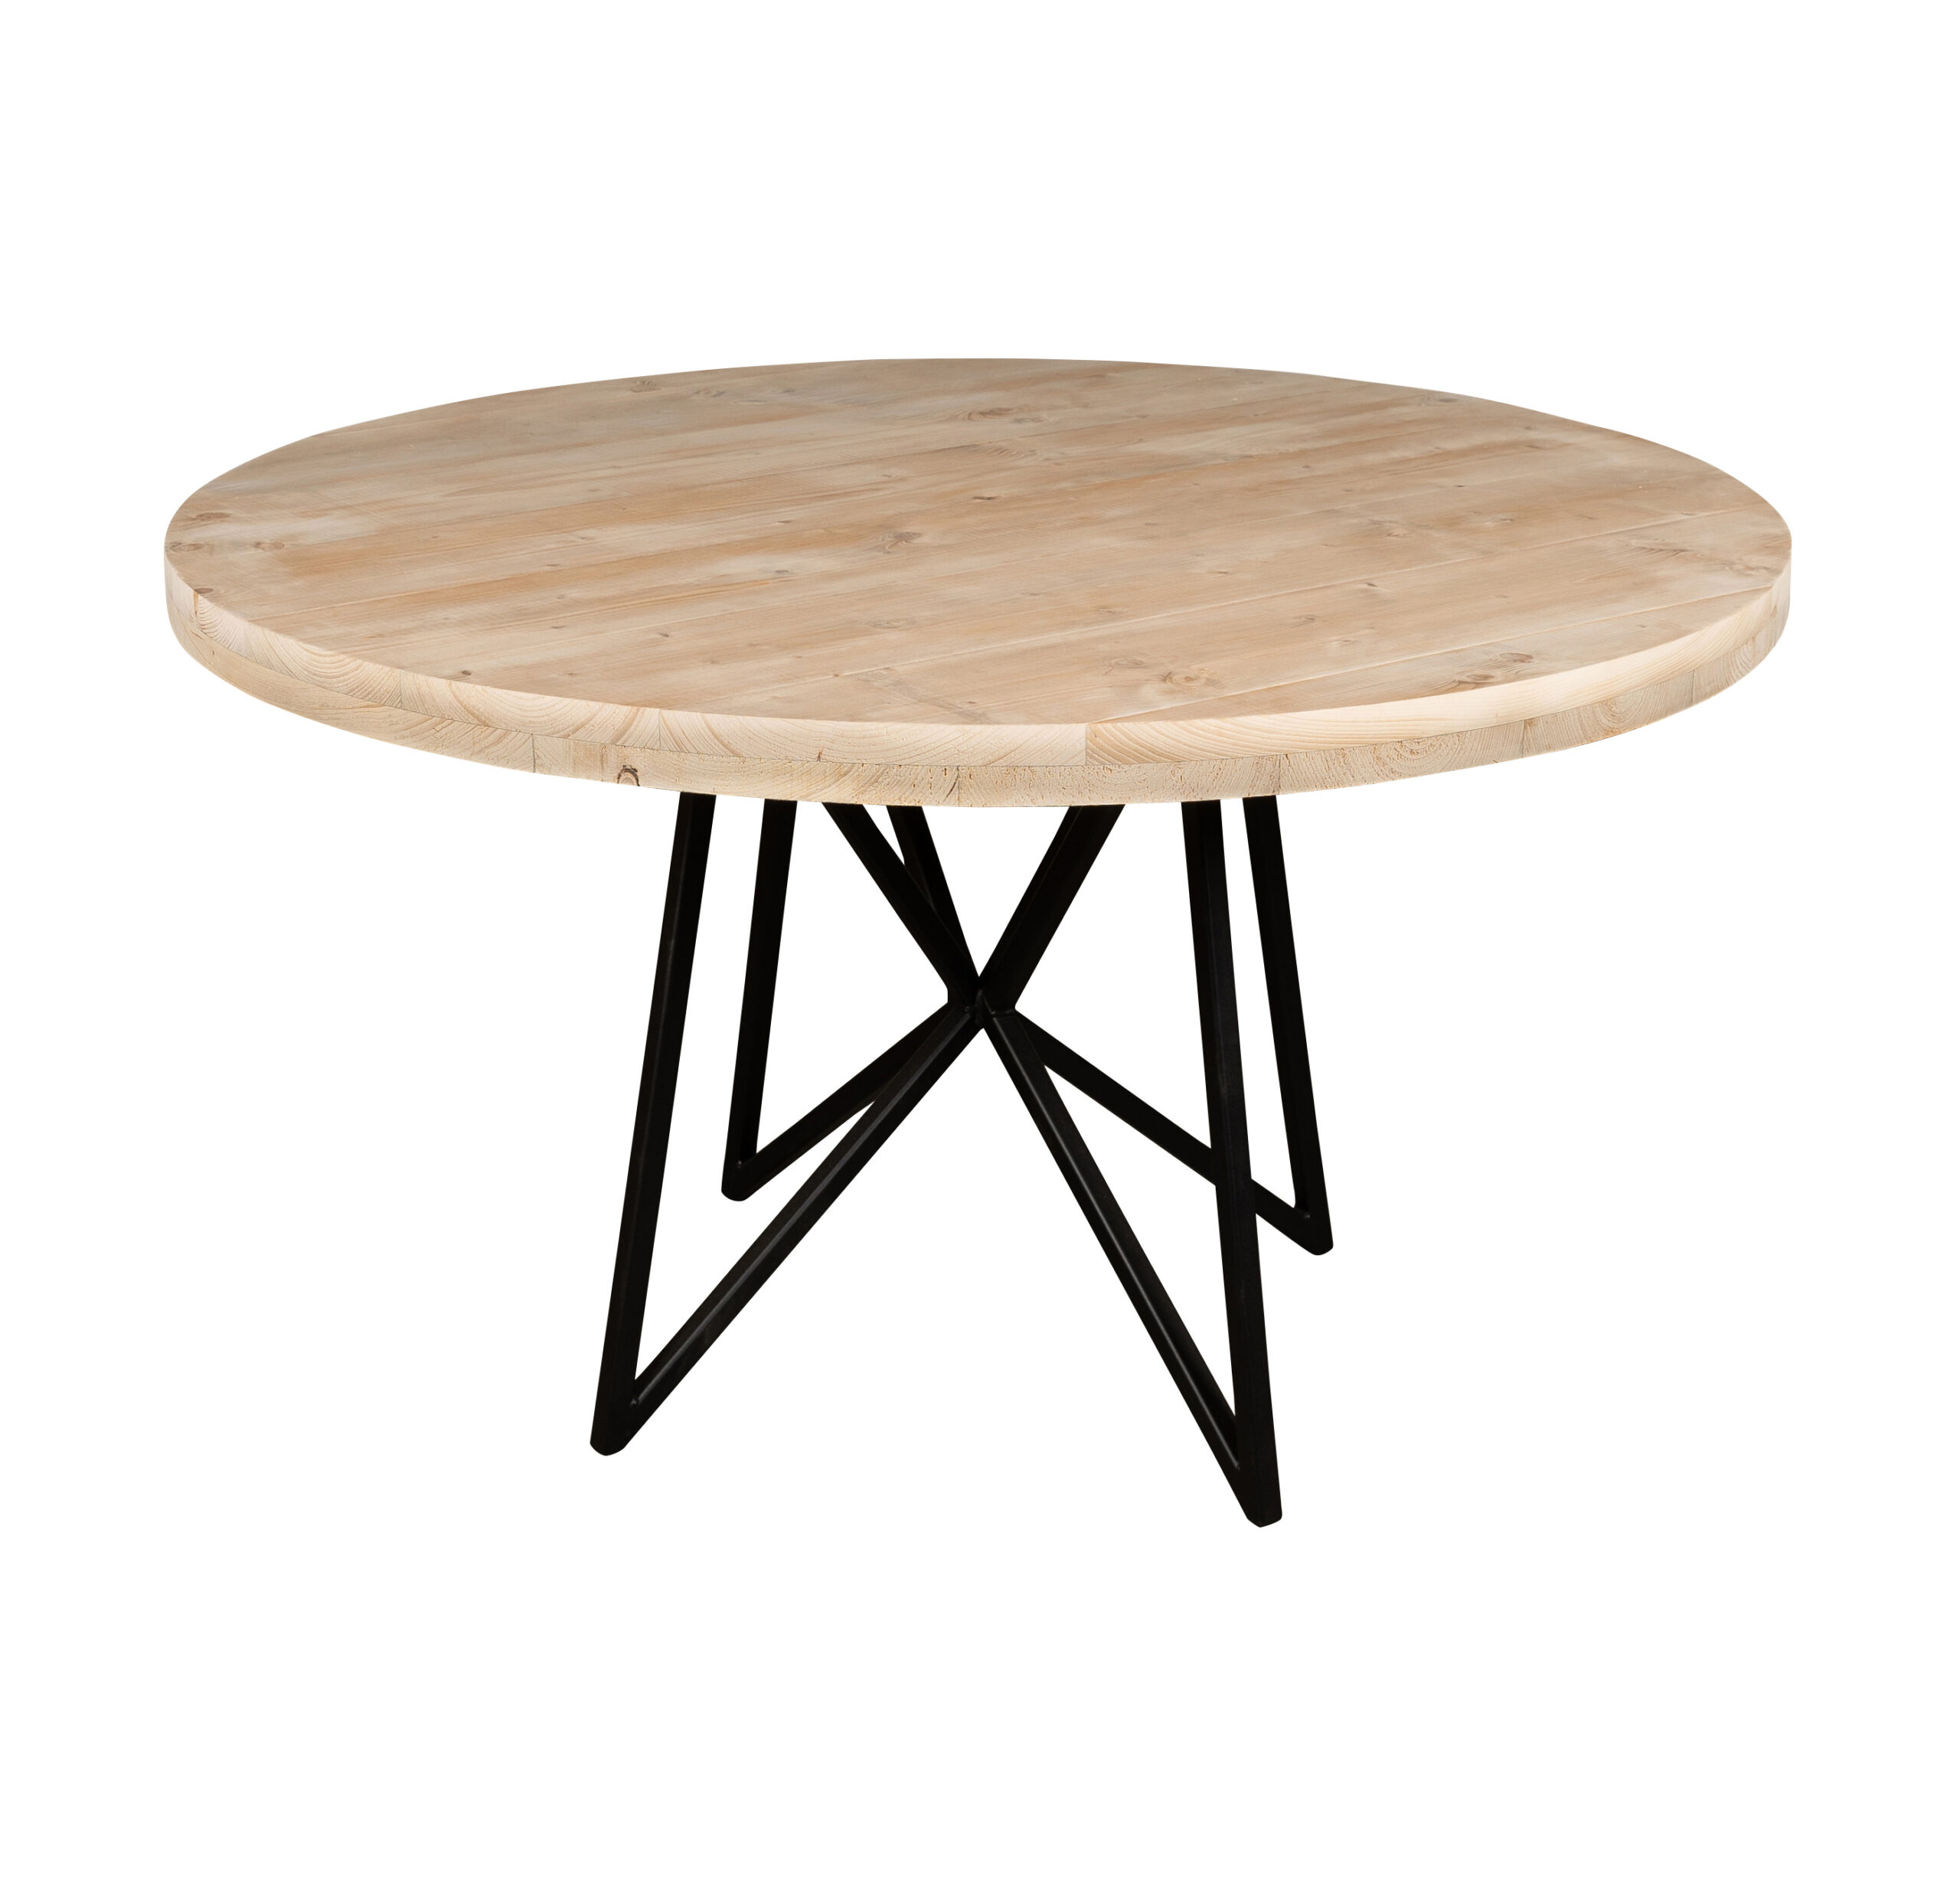 Voorman Snel vorm Tuintafel rond - Mooie ronde houten tafels voor buiten - op maat!